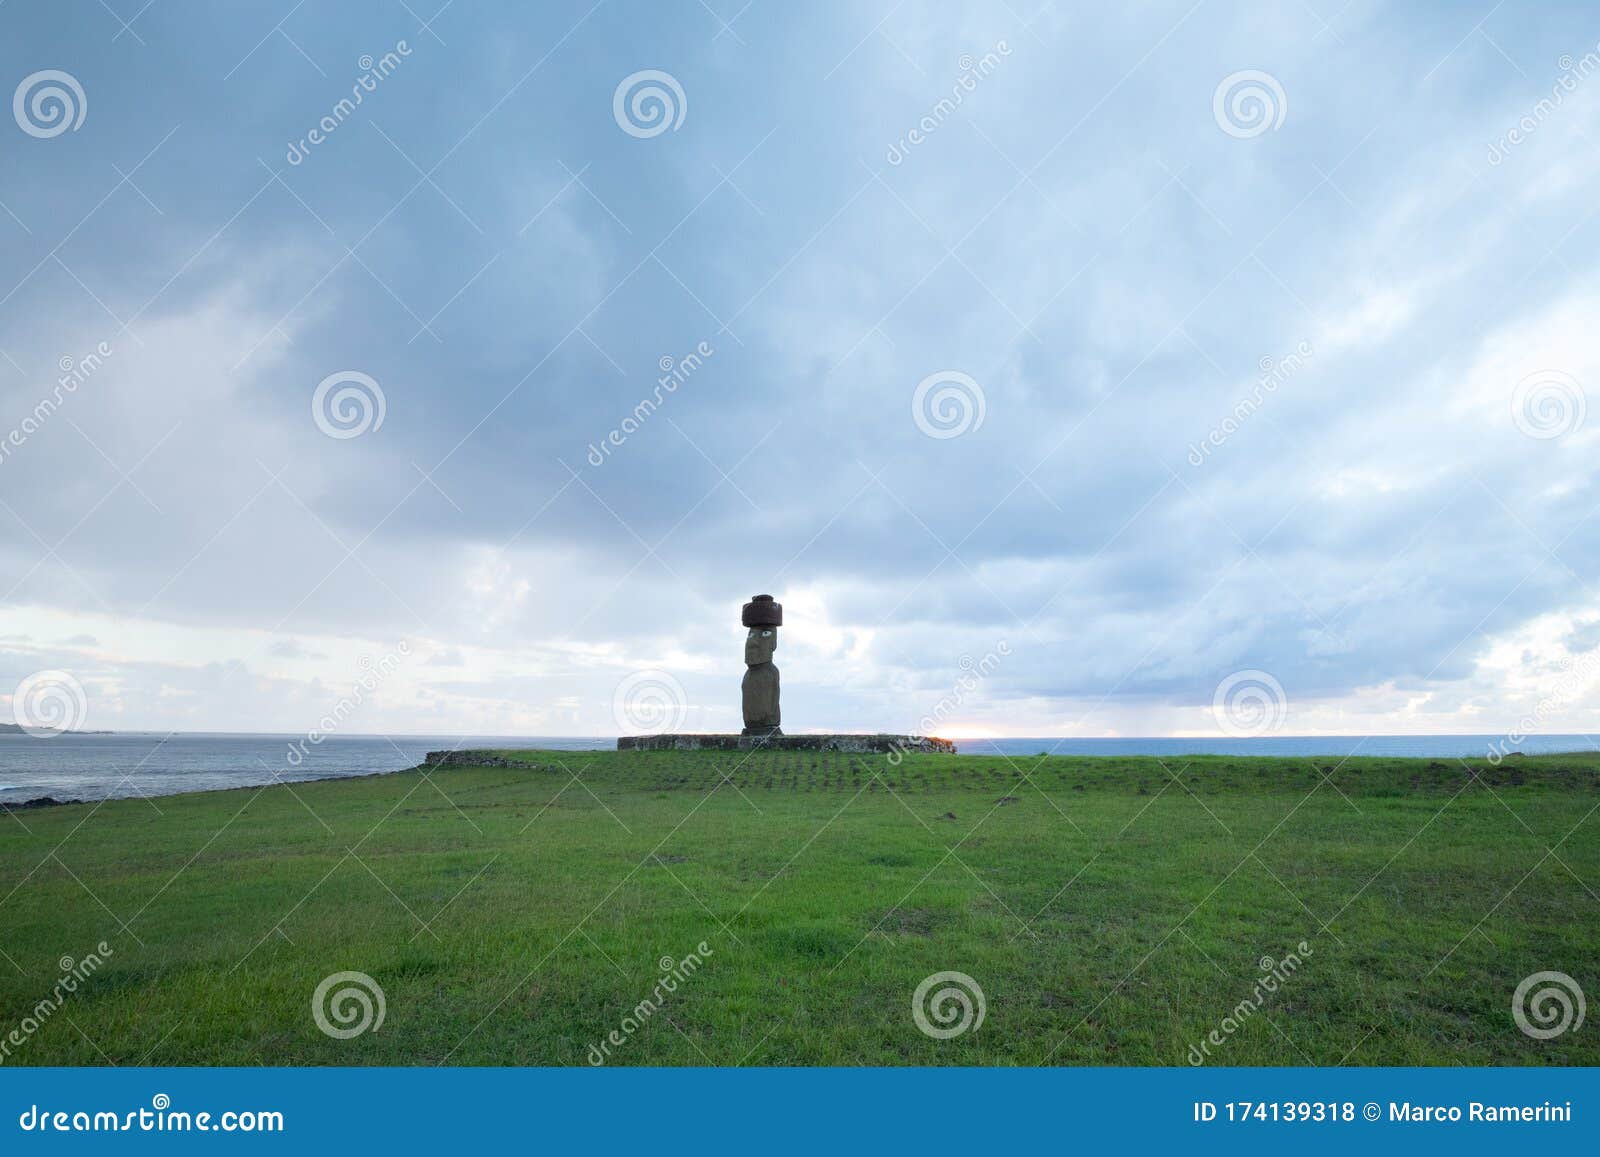 a giant statue of easter island. the moai of ahu ko te riku, hanga roa, easter island, chile